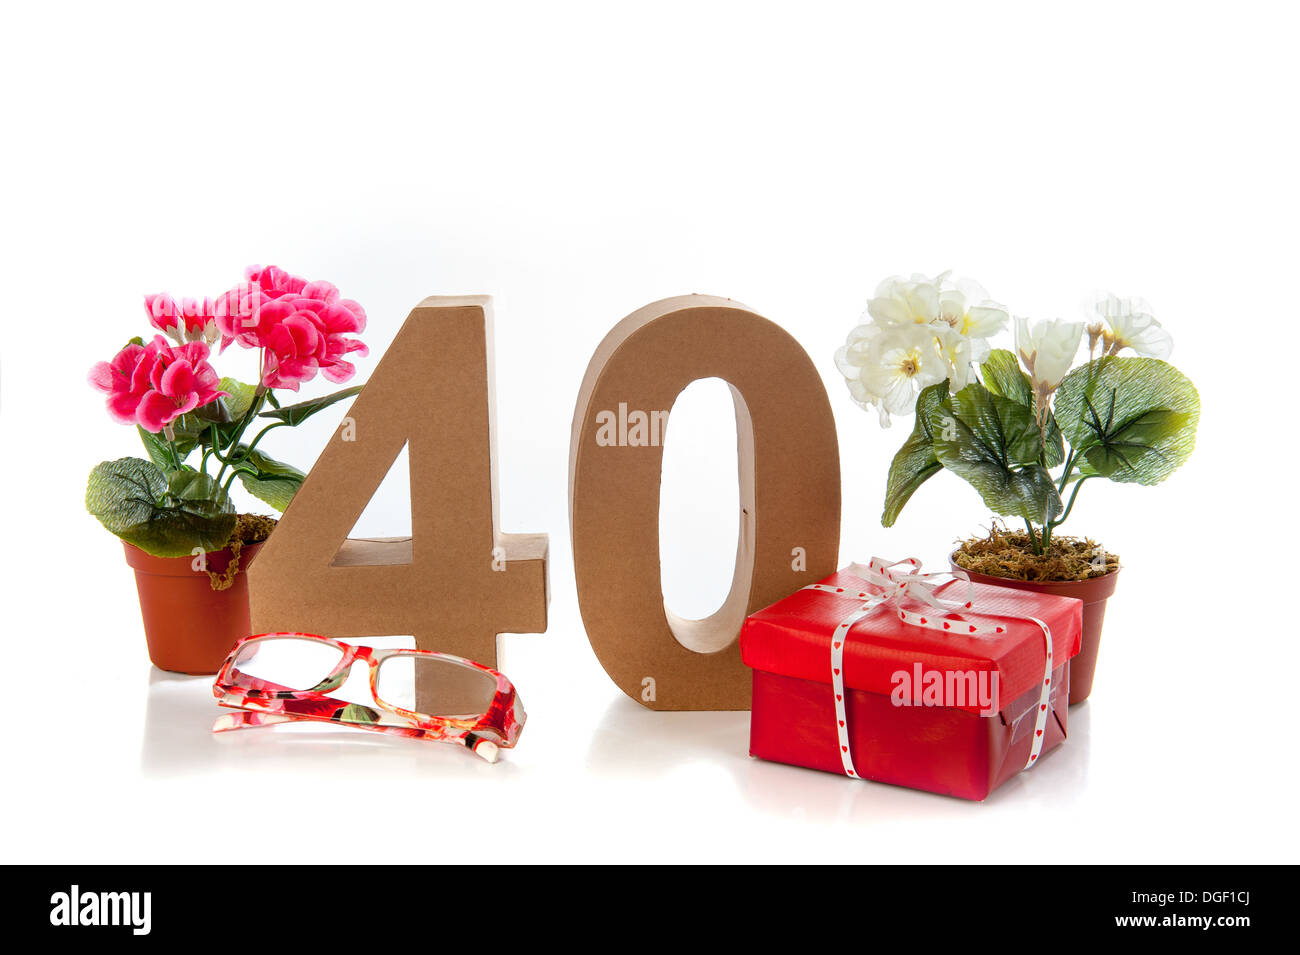 La célébration de votre 40e anniversaire, se présente comme lunettes de lecture et d'un begonia Banque D'Images